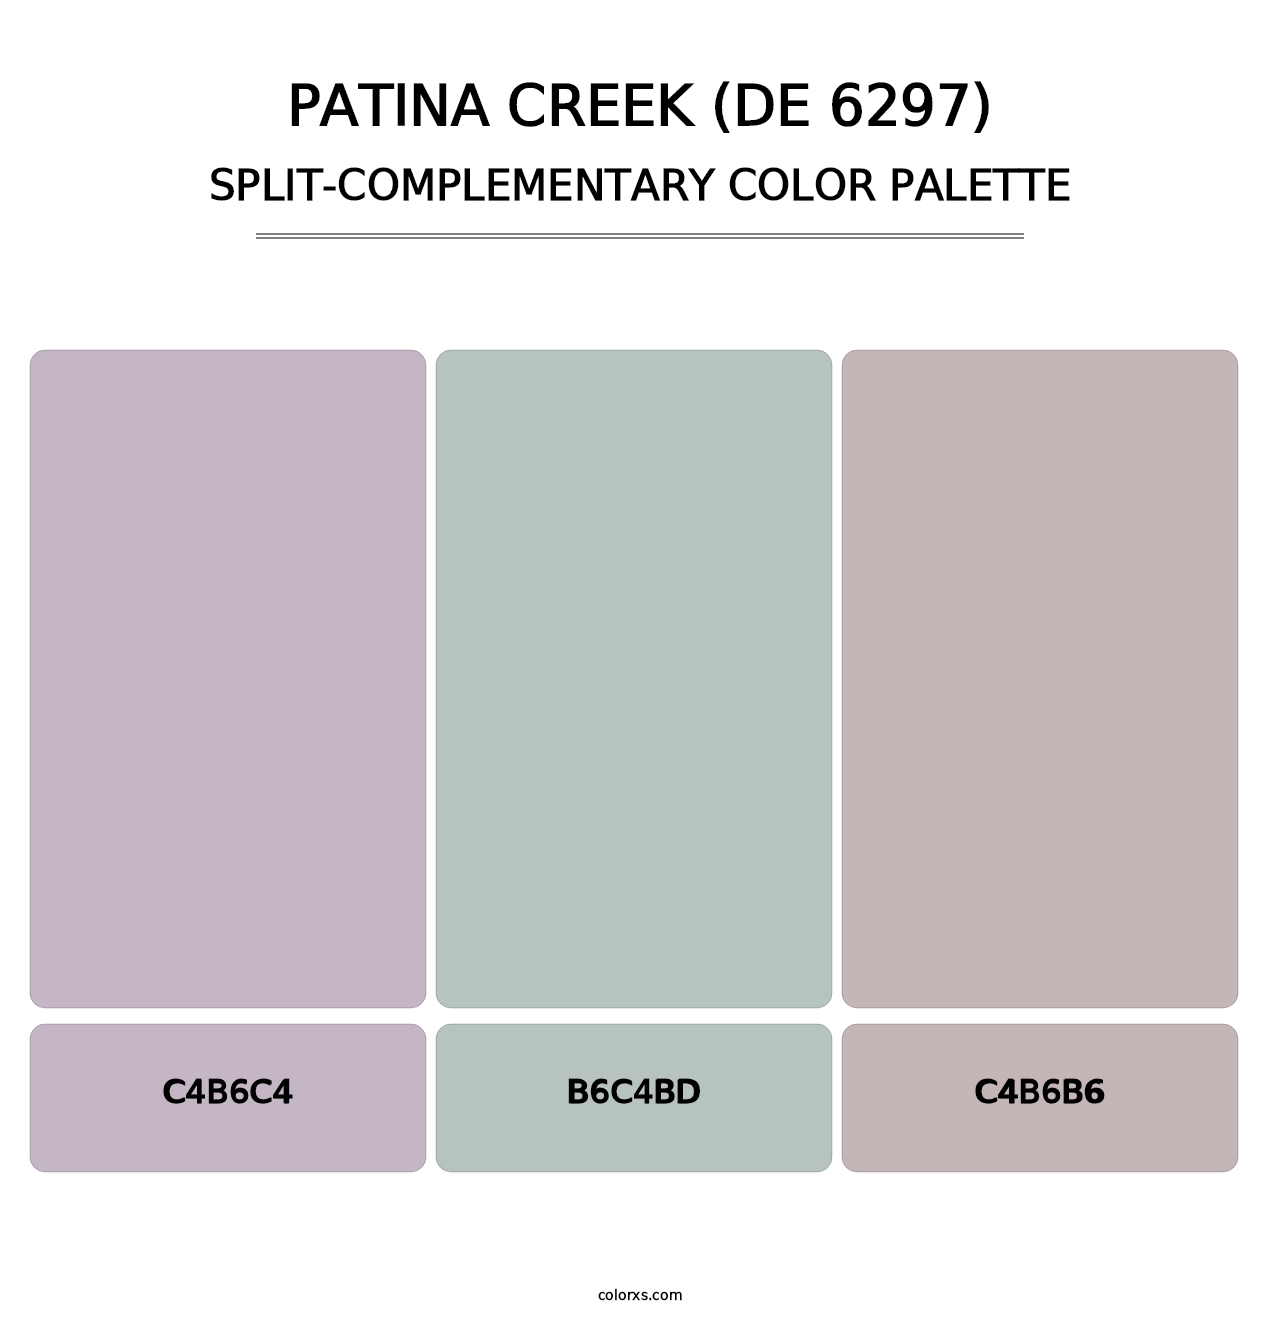 Patina Creek (DE 6297) - Split-Complementary Color Palette